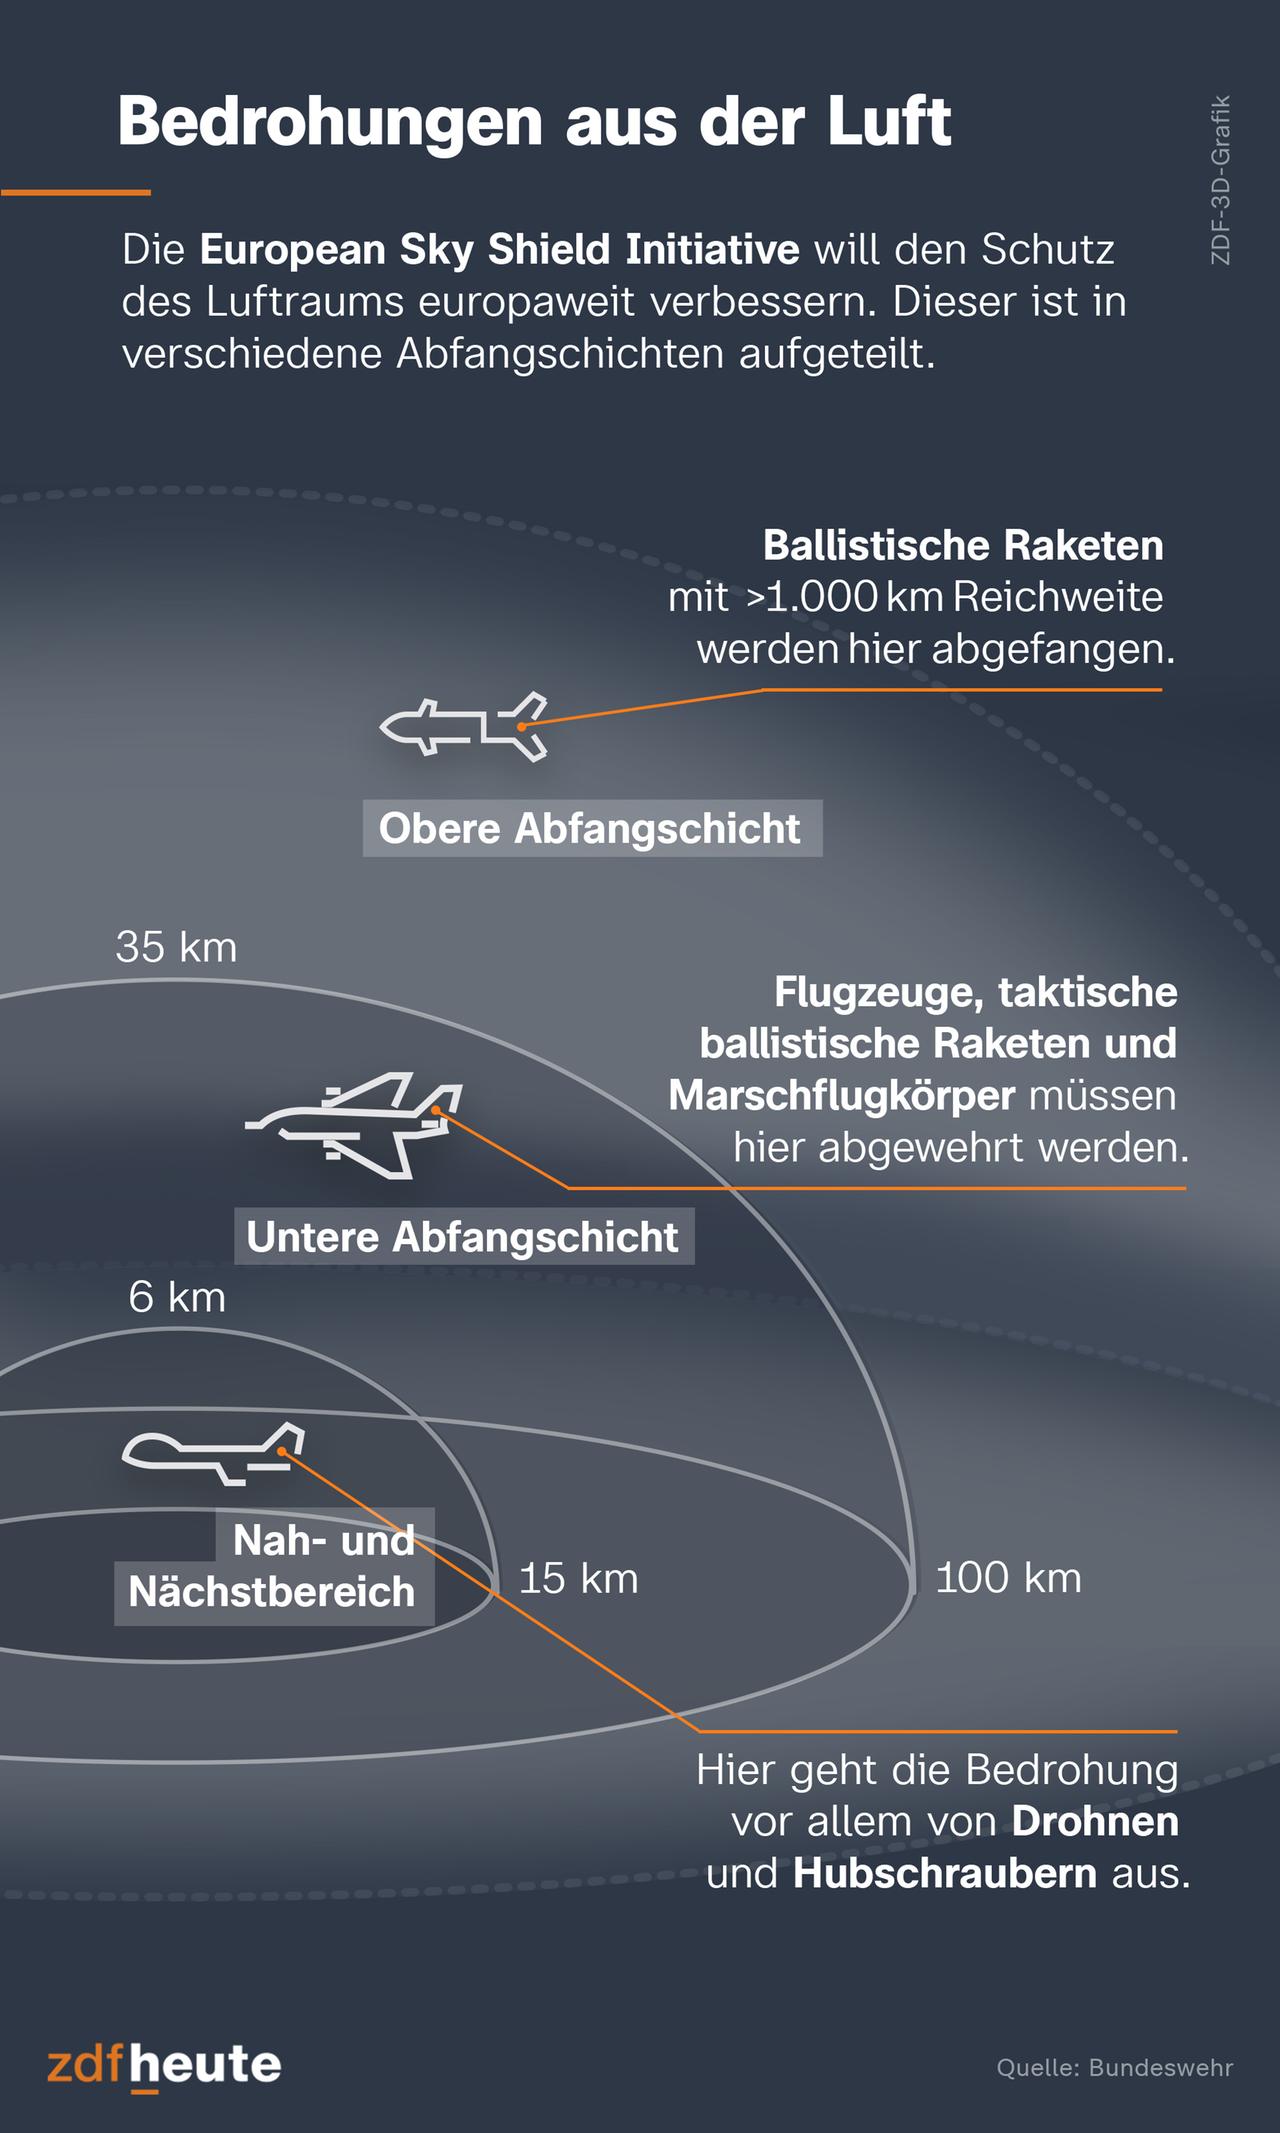 Bedrohungen aus der Luft: Die European Sky Shield Initiative will den Schutz des Luftraums europaweit verbessern. Dieser ist in verschiedene Abfangschichten aufgeteilt. Erstens: der Nah- und Nächstbereich (bis zu 6 km Höhe und 15 km Weite). Hier geht die Bedrohung vor allem von Drohnen und Hubschraubern aus. Zweitens: die untere Abfangschicht (bis zu 35 km Höhe und 100 km Weite). Flugzeuge, taktische ballistische Raketen und Marschflugkörper müssen hier abgewehrt werden. Drittens: die obere Abfangschicht (über 35 km Höhe und 100 km Weite). Ballistische Raketen mit mehr als 1.000 km Reichweite werden hier abgefangen.